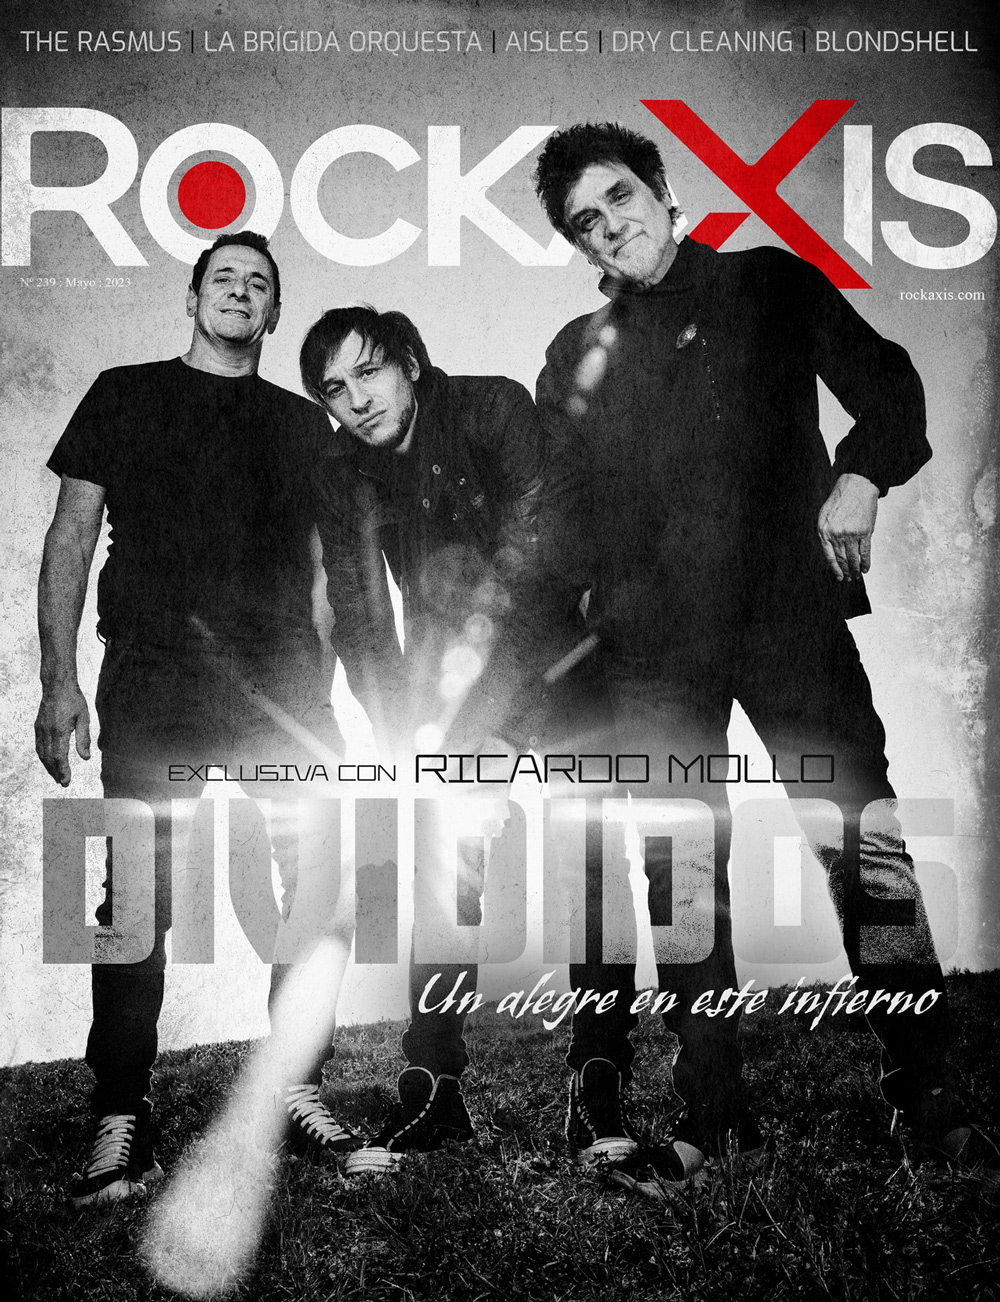 Rockaxis #239